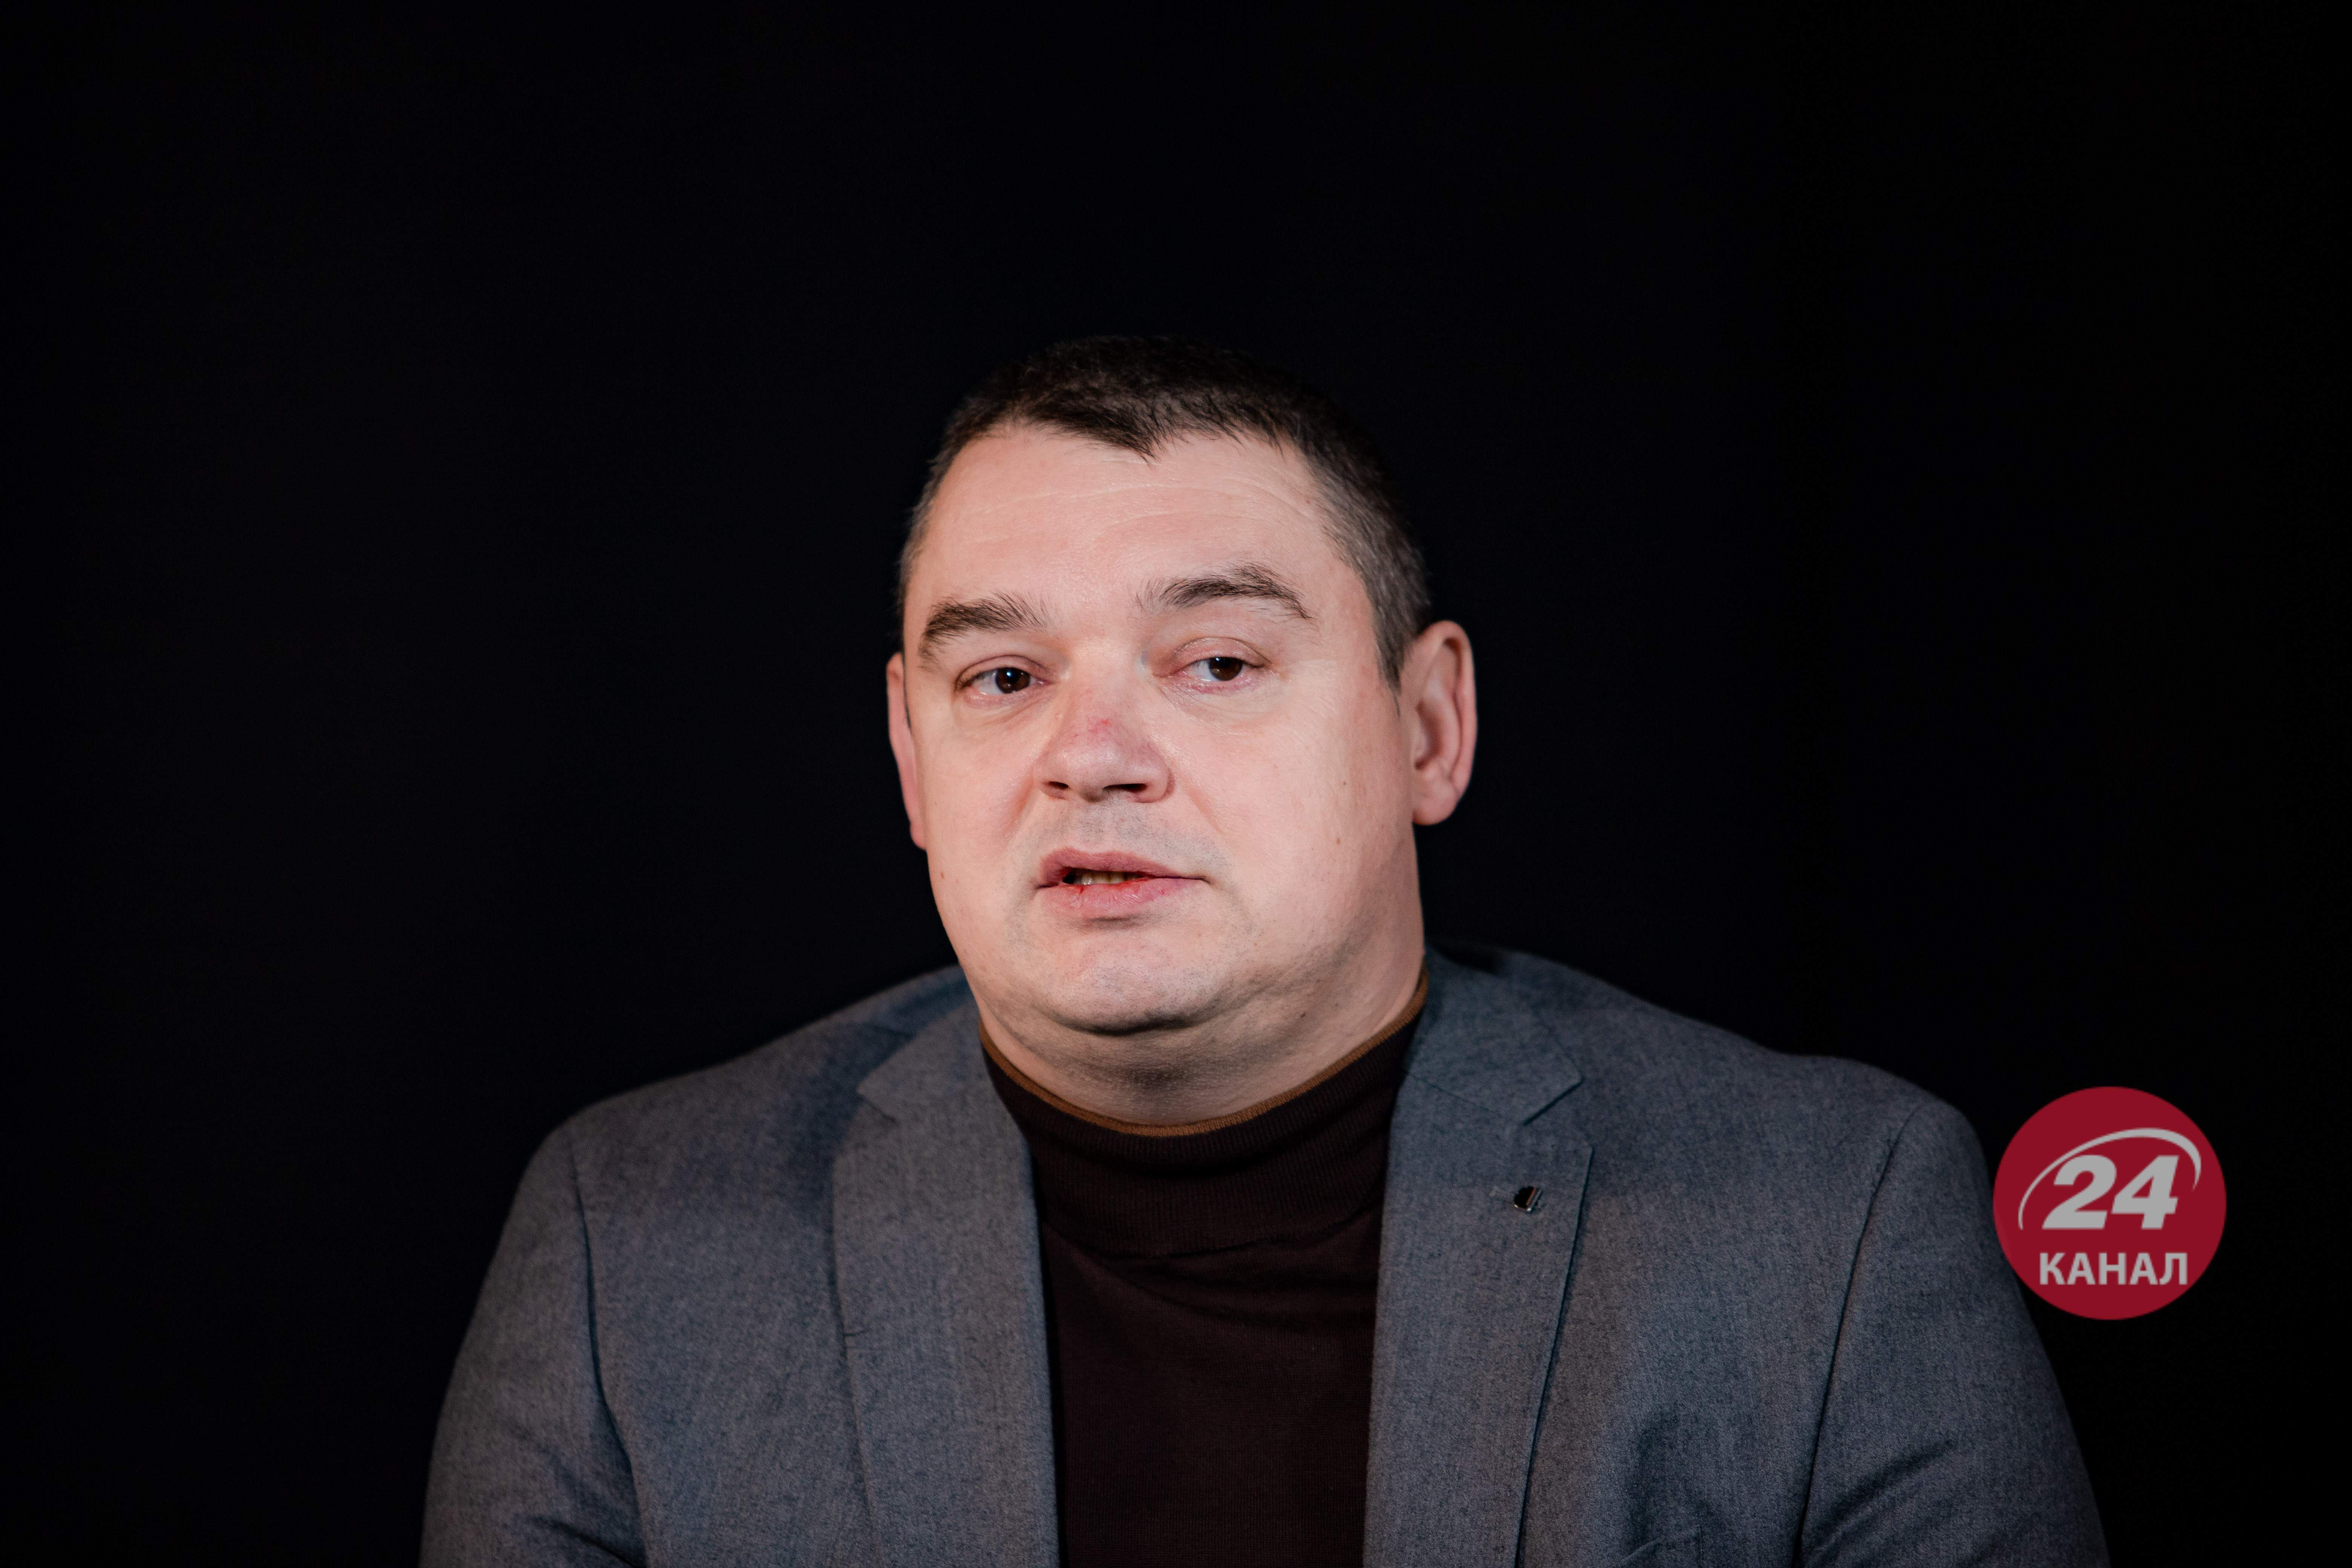 Демченко назвал главные задачи, которые ему поставили перед назначением главой таможни